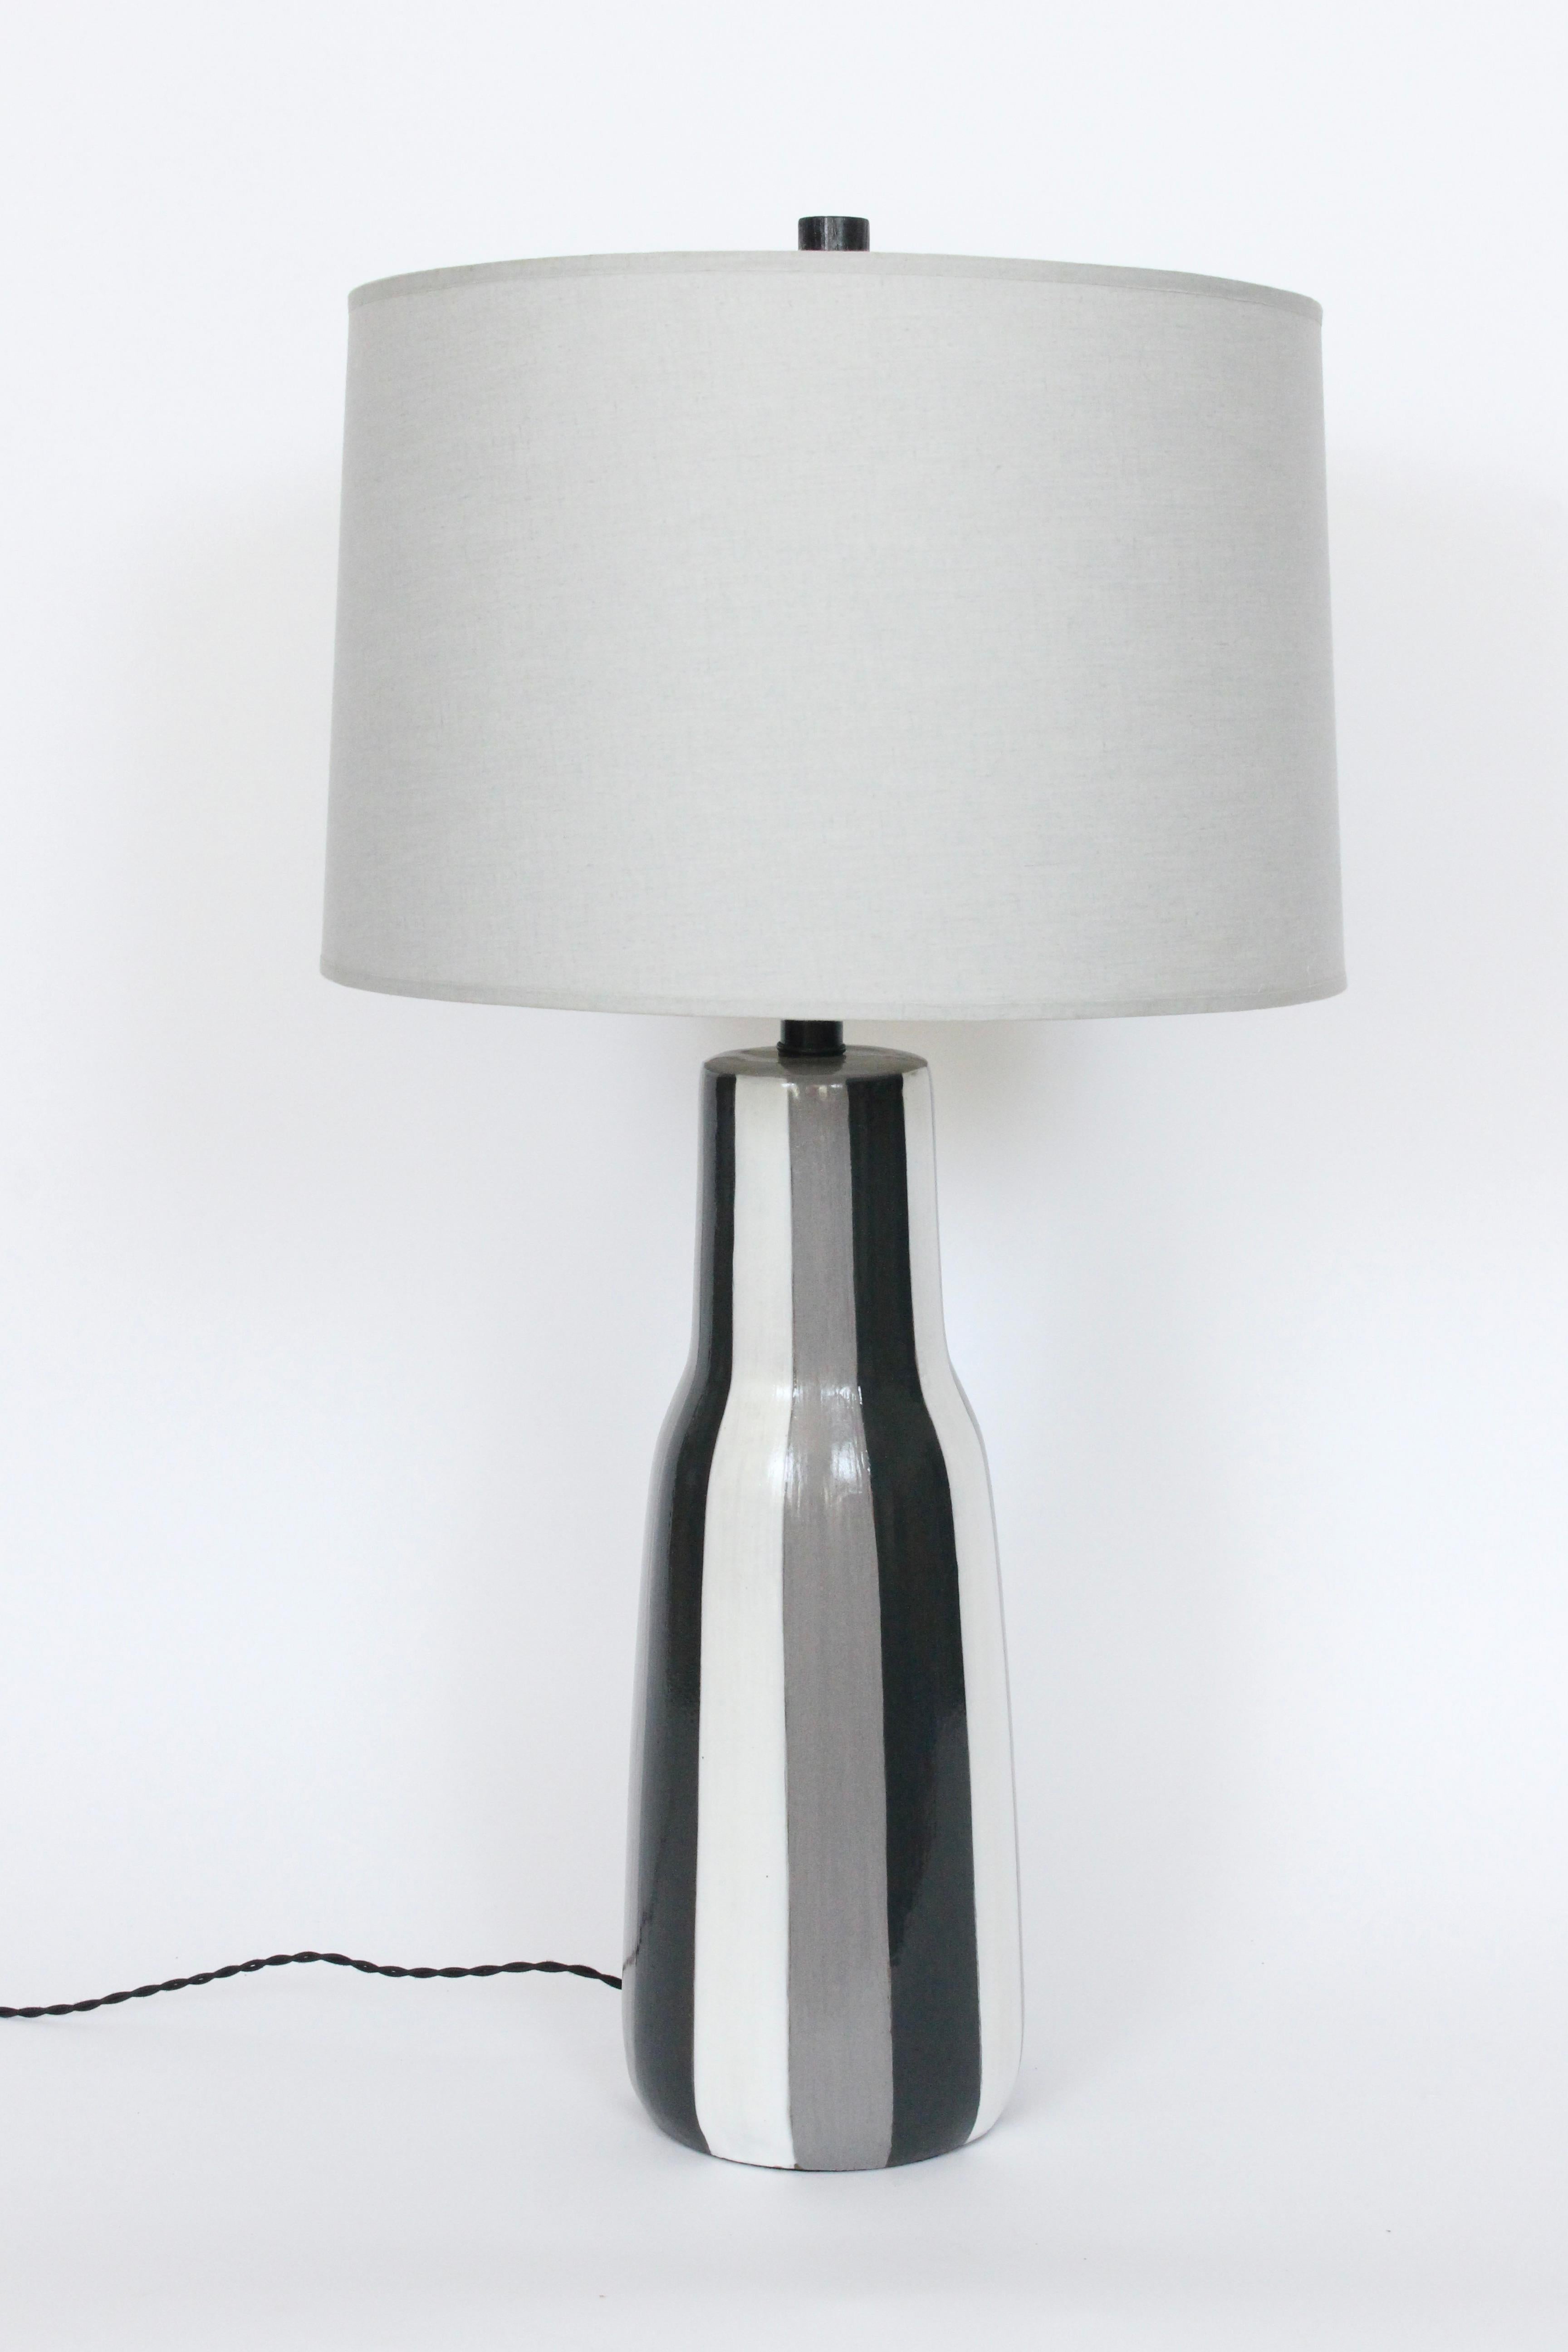 Monumental Design Technics handgefertigte glänzend glasierte Keramik Tischlampe. Geringe Stellfläche. Eine längliche Flaschenform mit handgemalten vertikalen Streifen in Grau, Schwarz und Weiß und einem originalen schwarz emaillierten Holzknauf. 